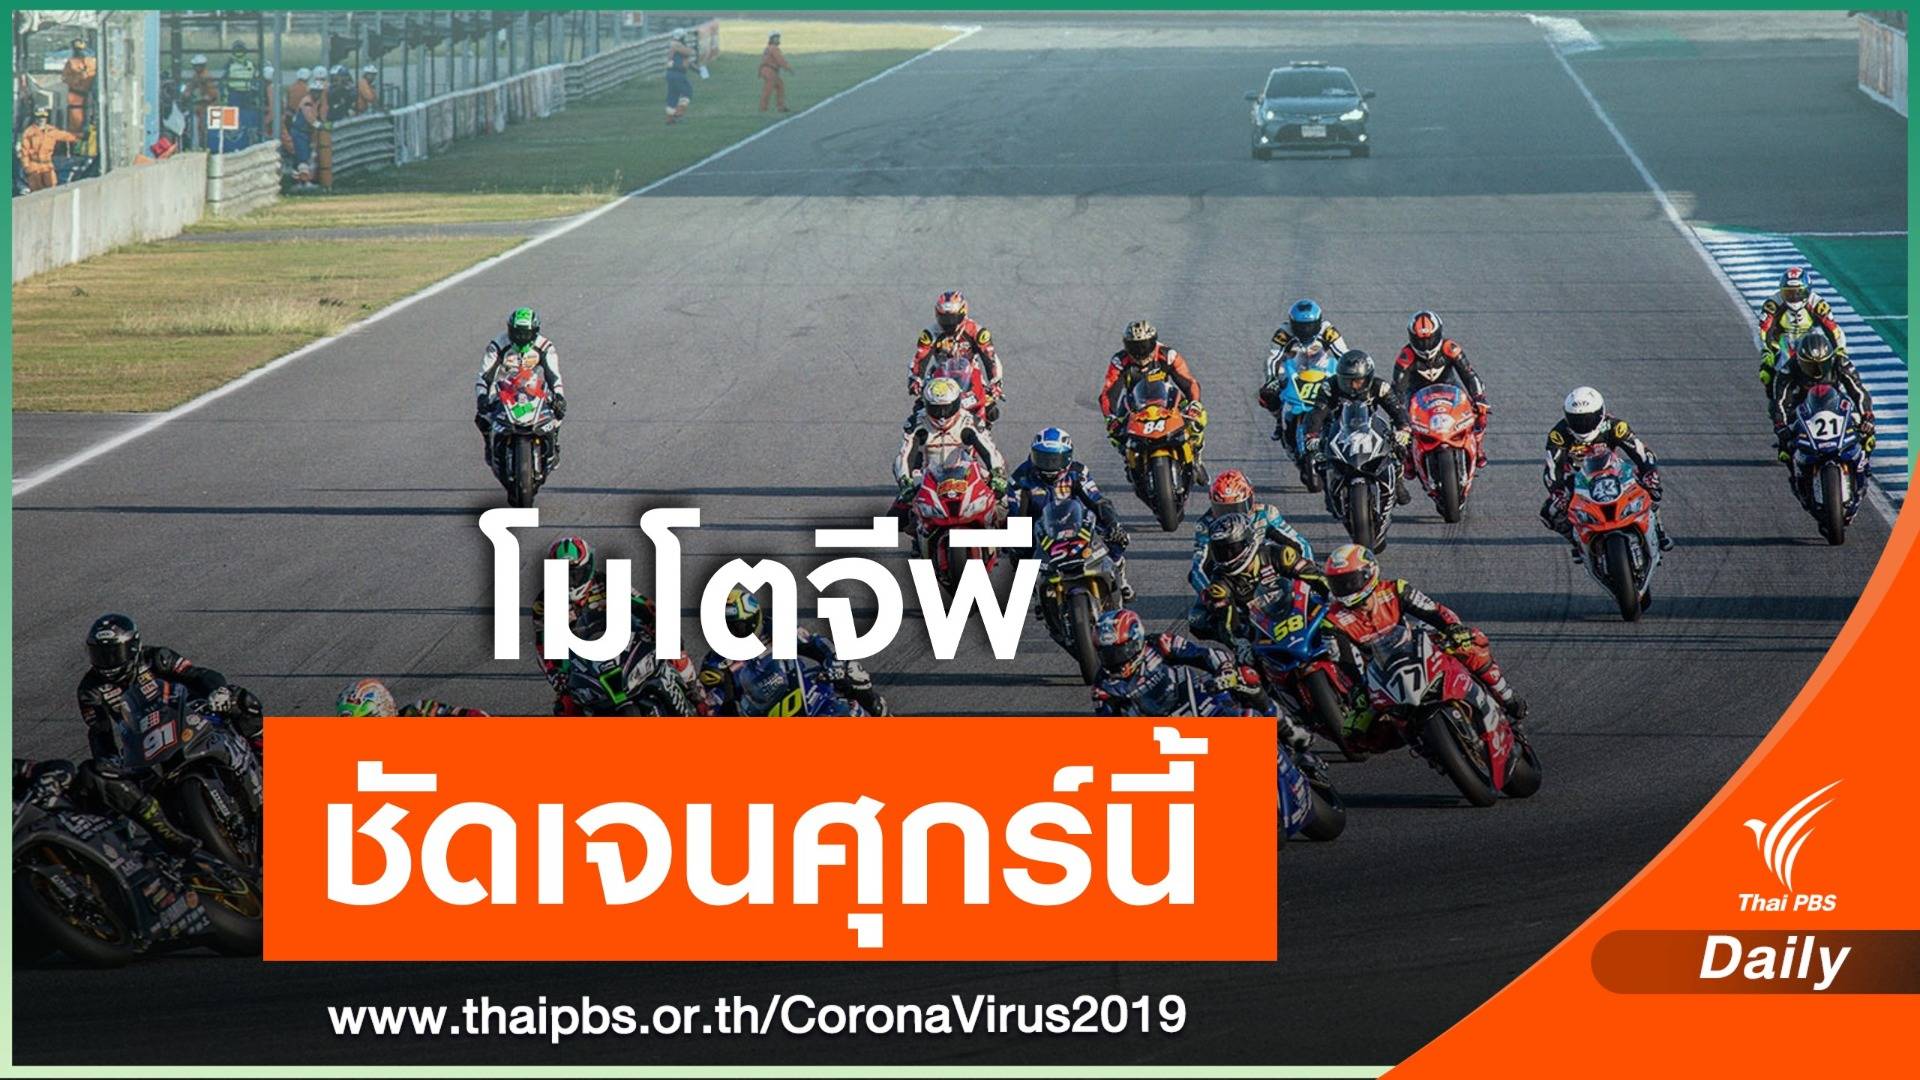 ฝ่ายจัดการแข่งขันเตรียมประเมิน จัดแข่งโมโตจีพีในไทยปีนี้ 